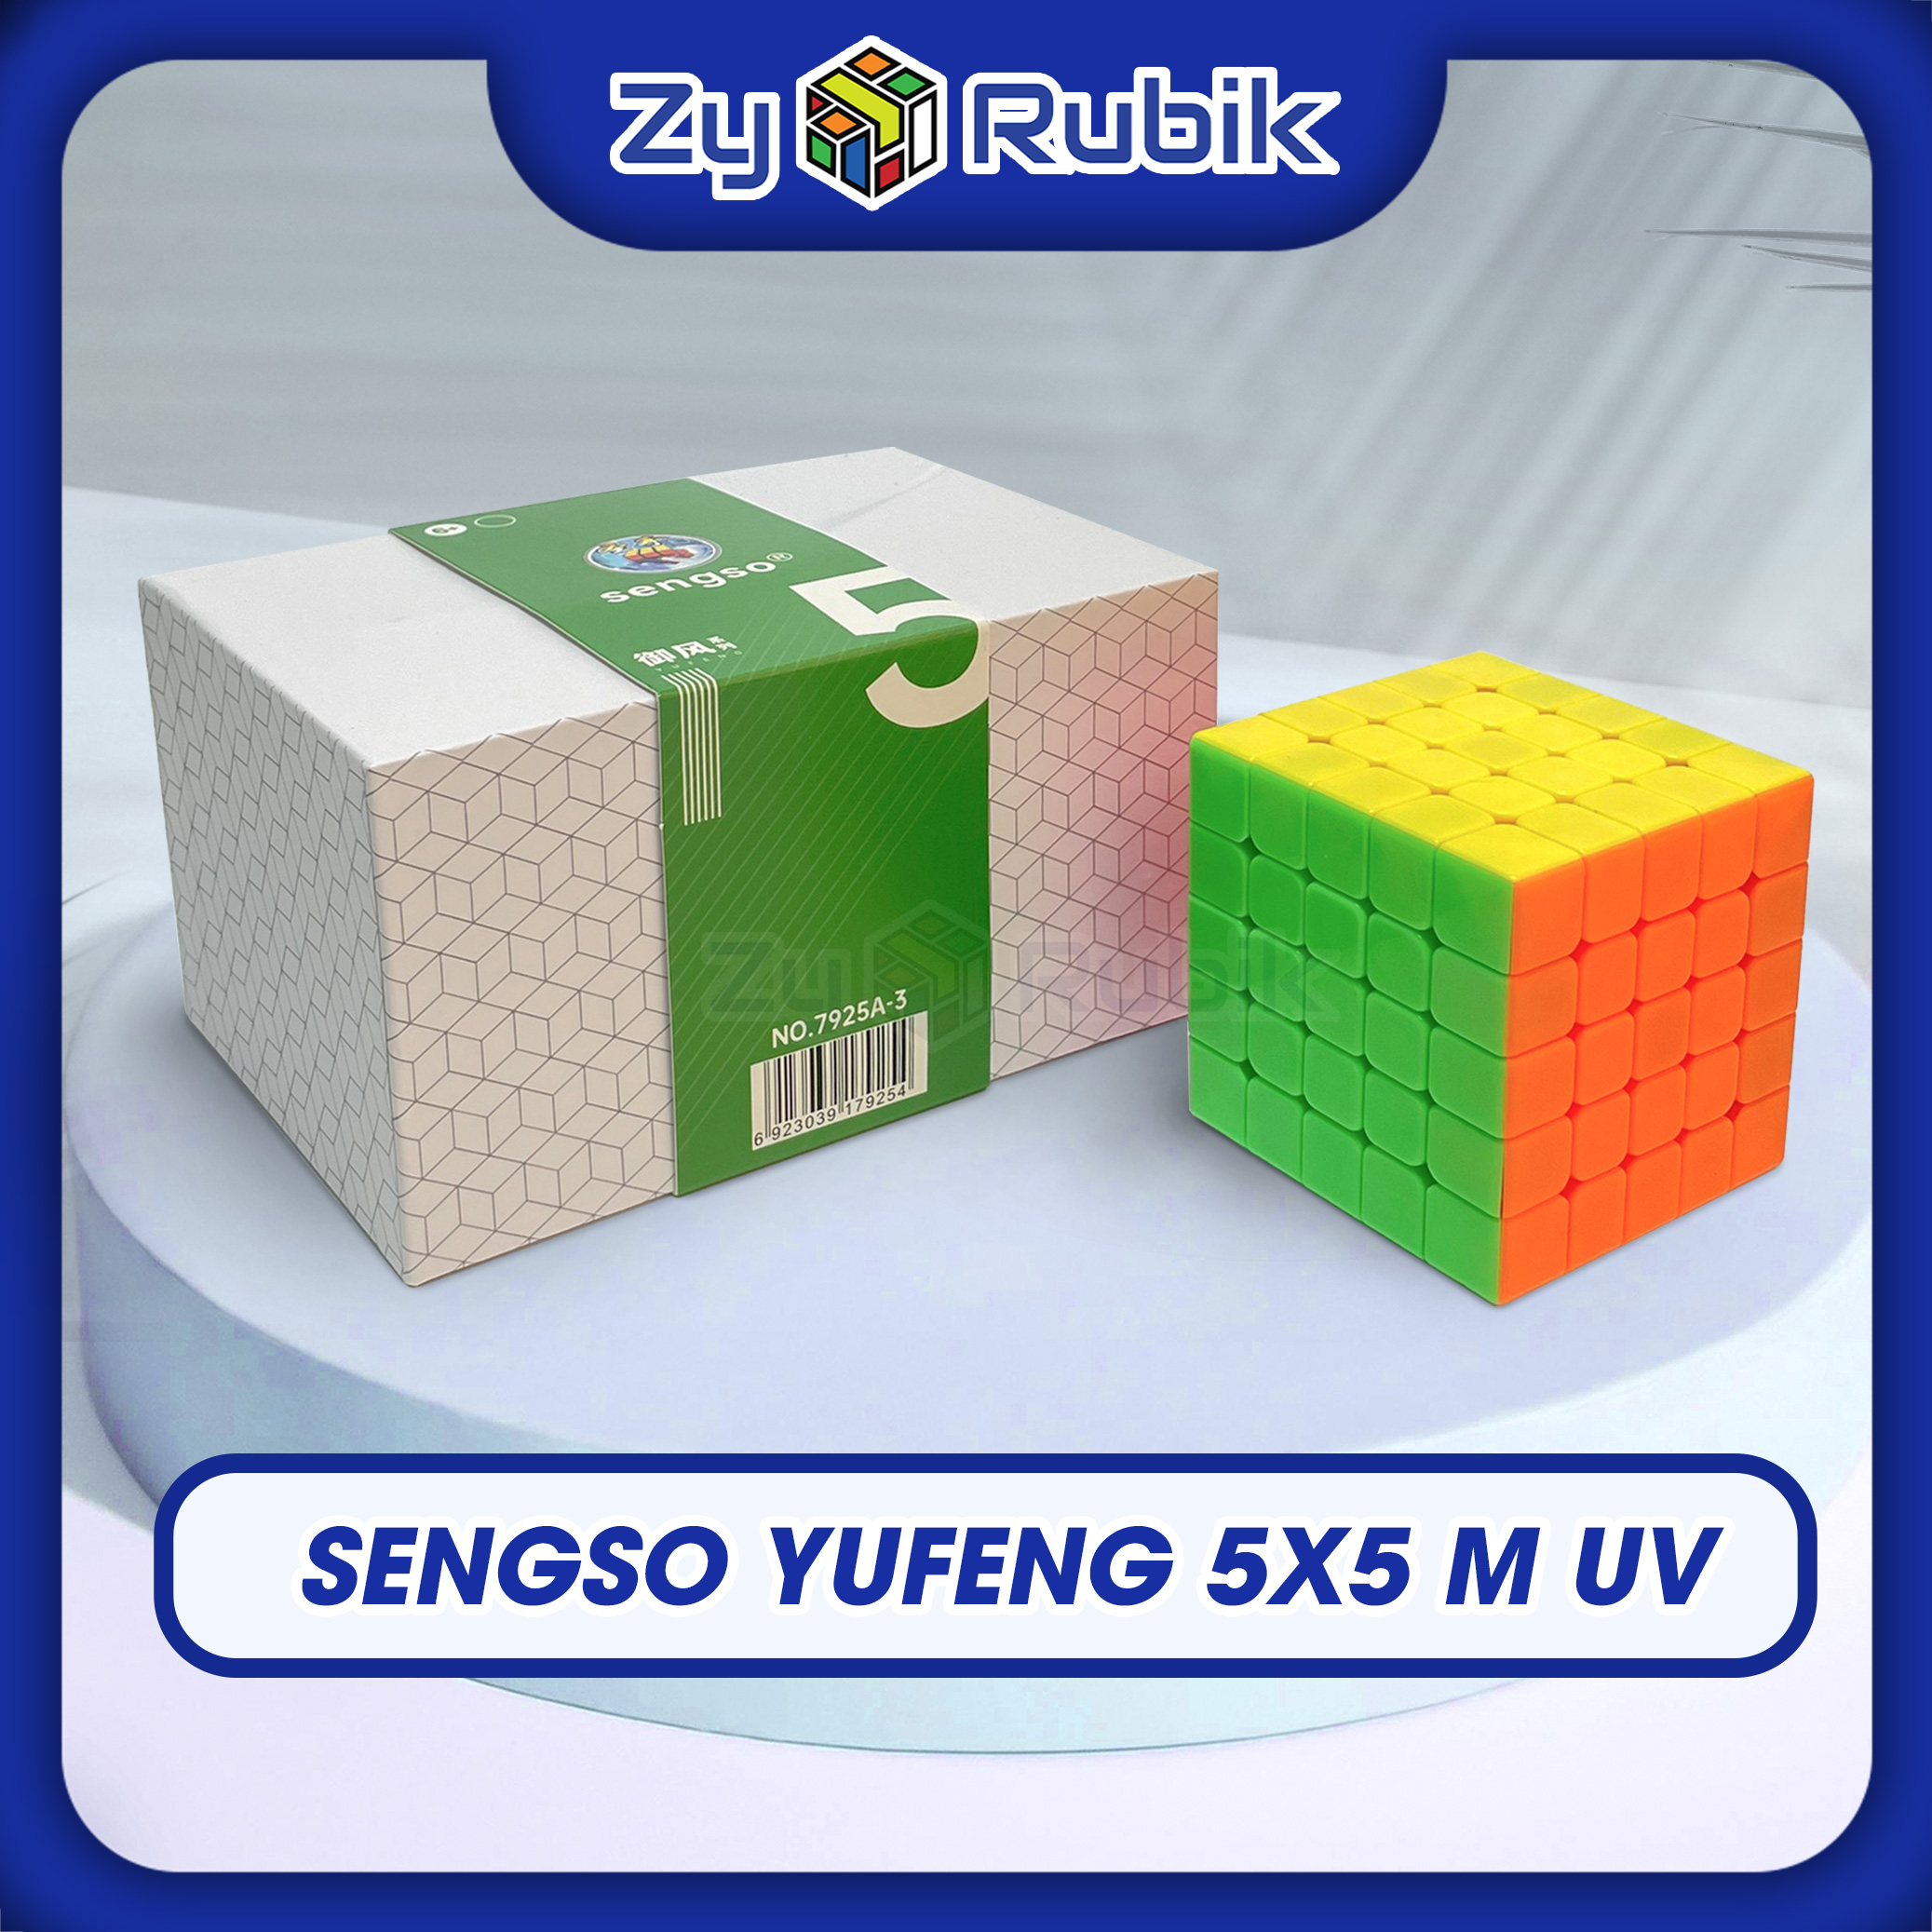 Rubik 5x5 Sengso Yufeng UV Có Nam Châm - Shengshou Yufeng 5M UV